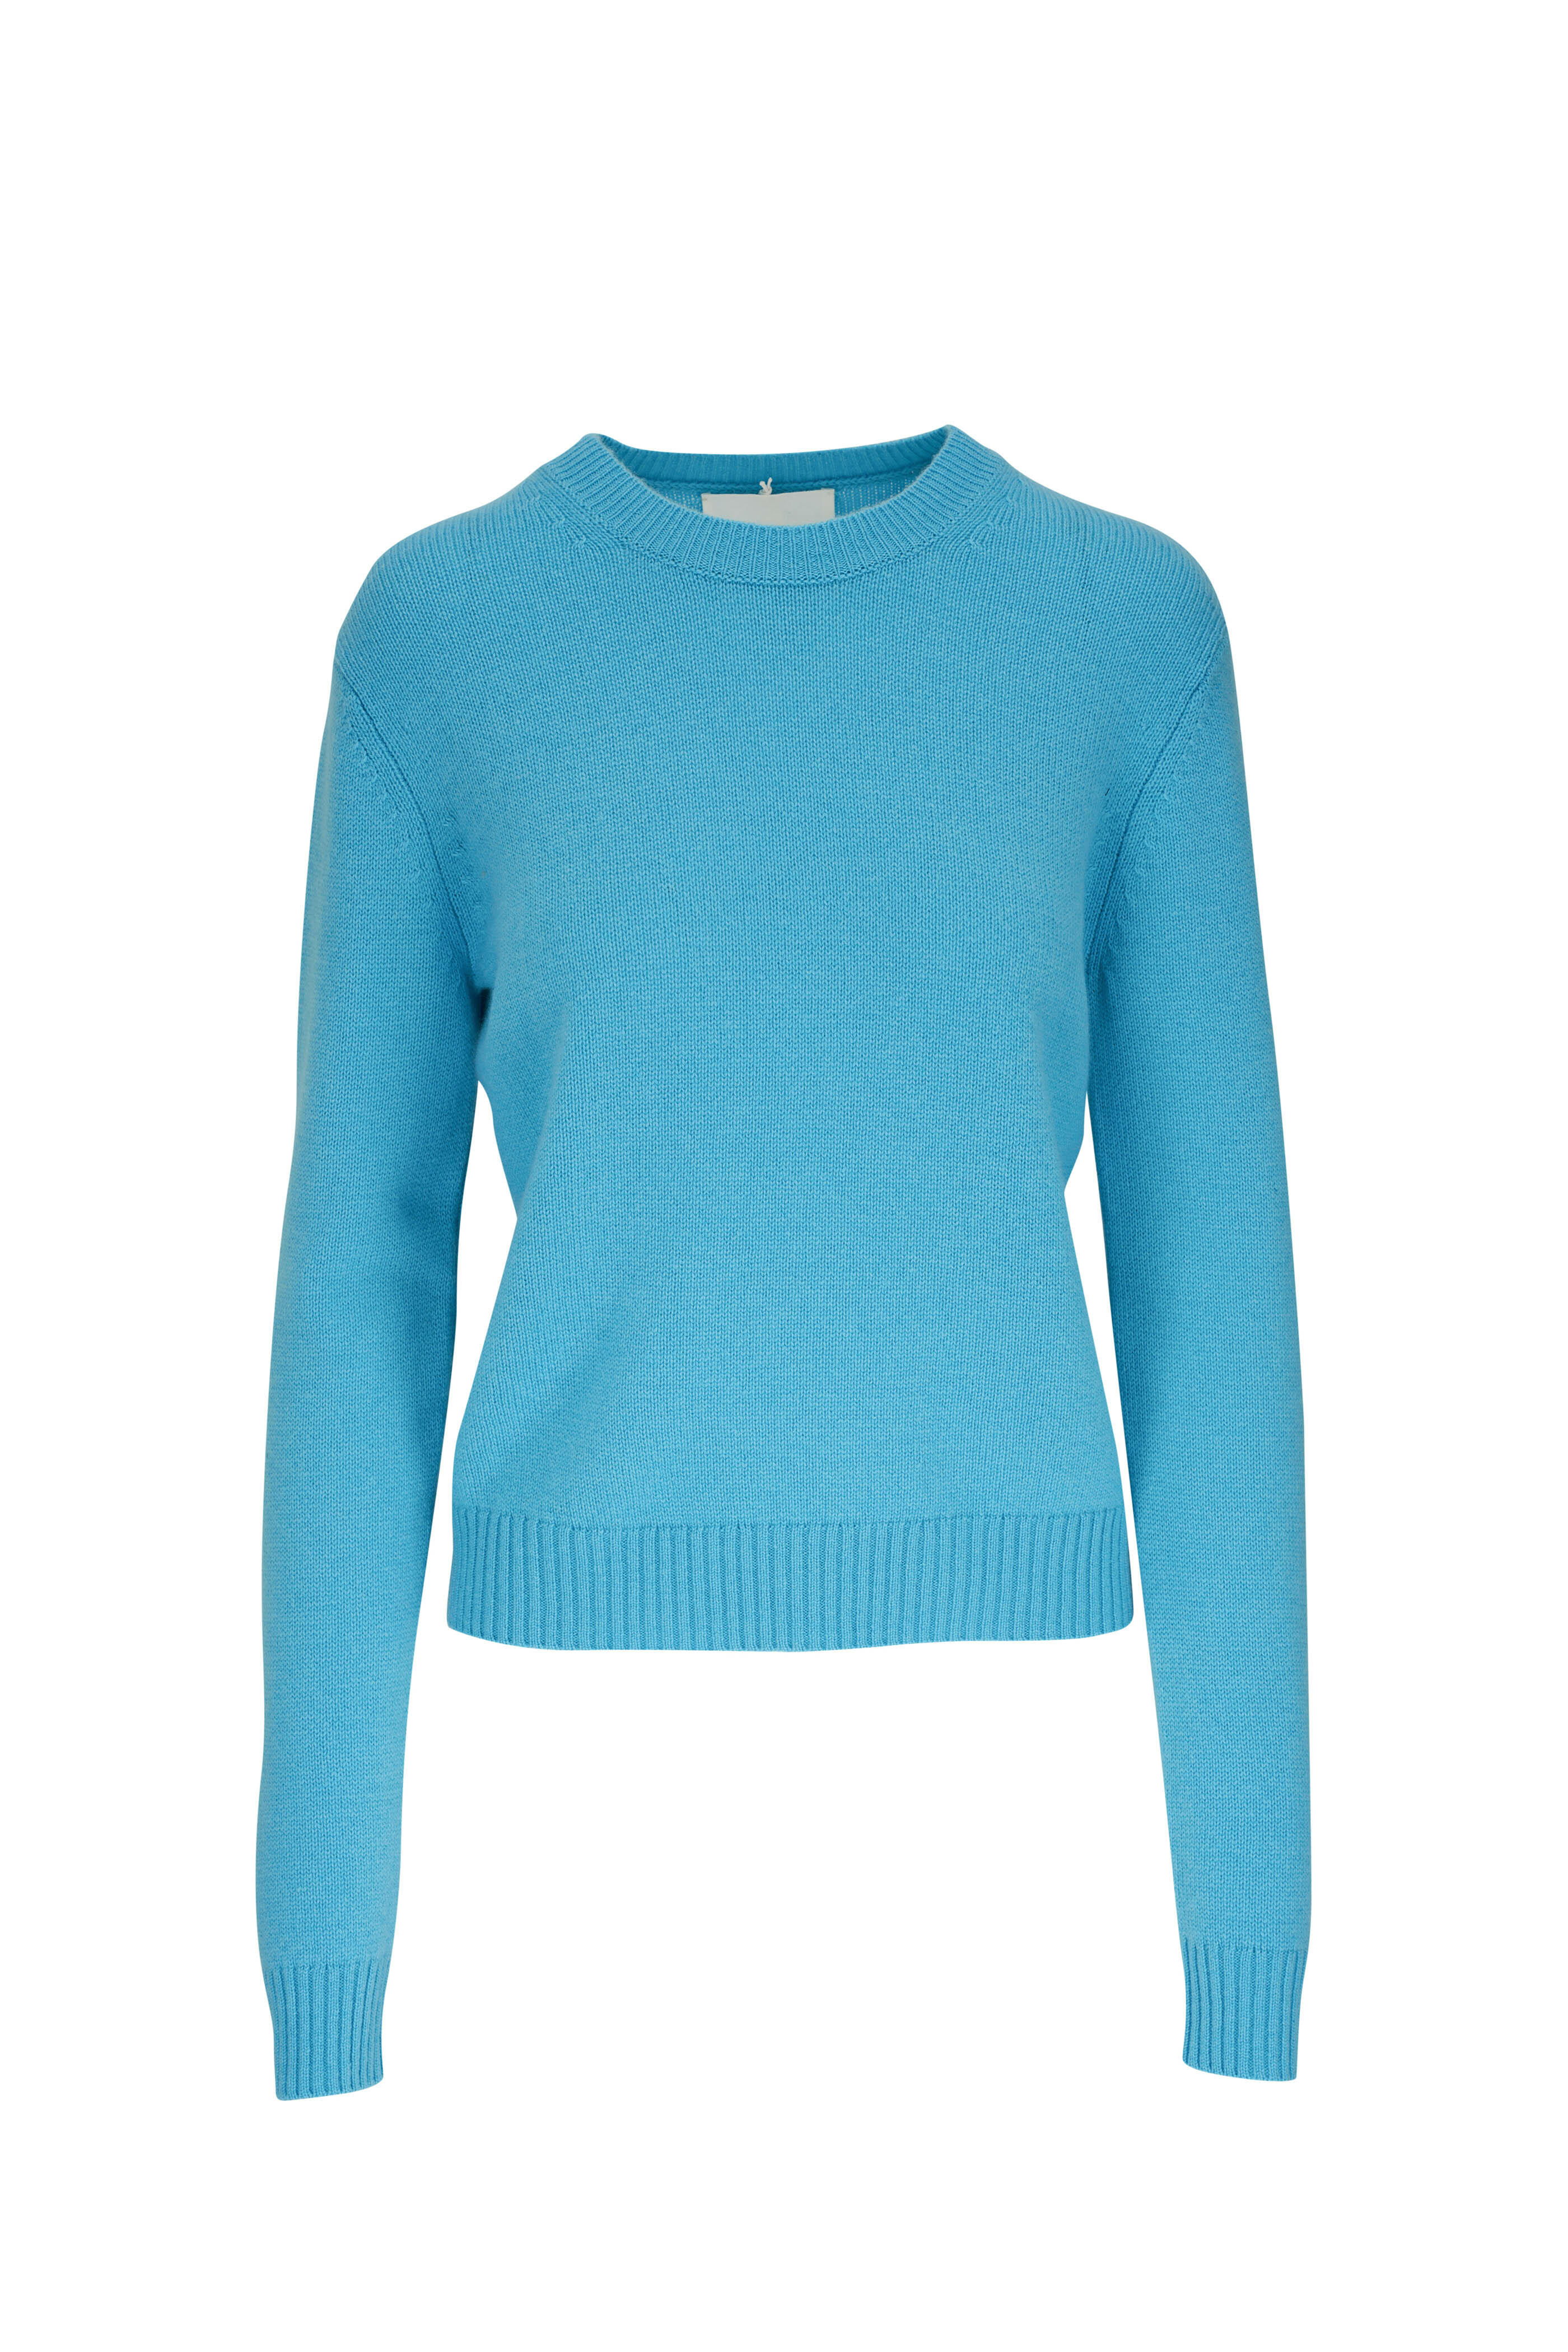 Lisa Yang - Mable Amalfi Blue Cashmere Crewneck Sweater